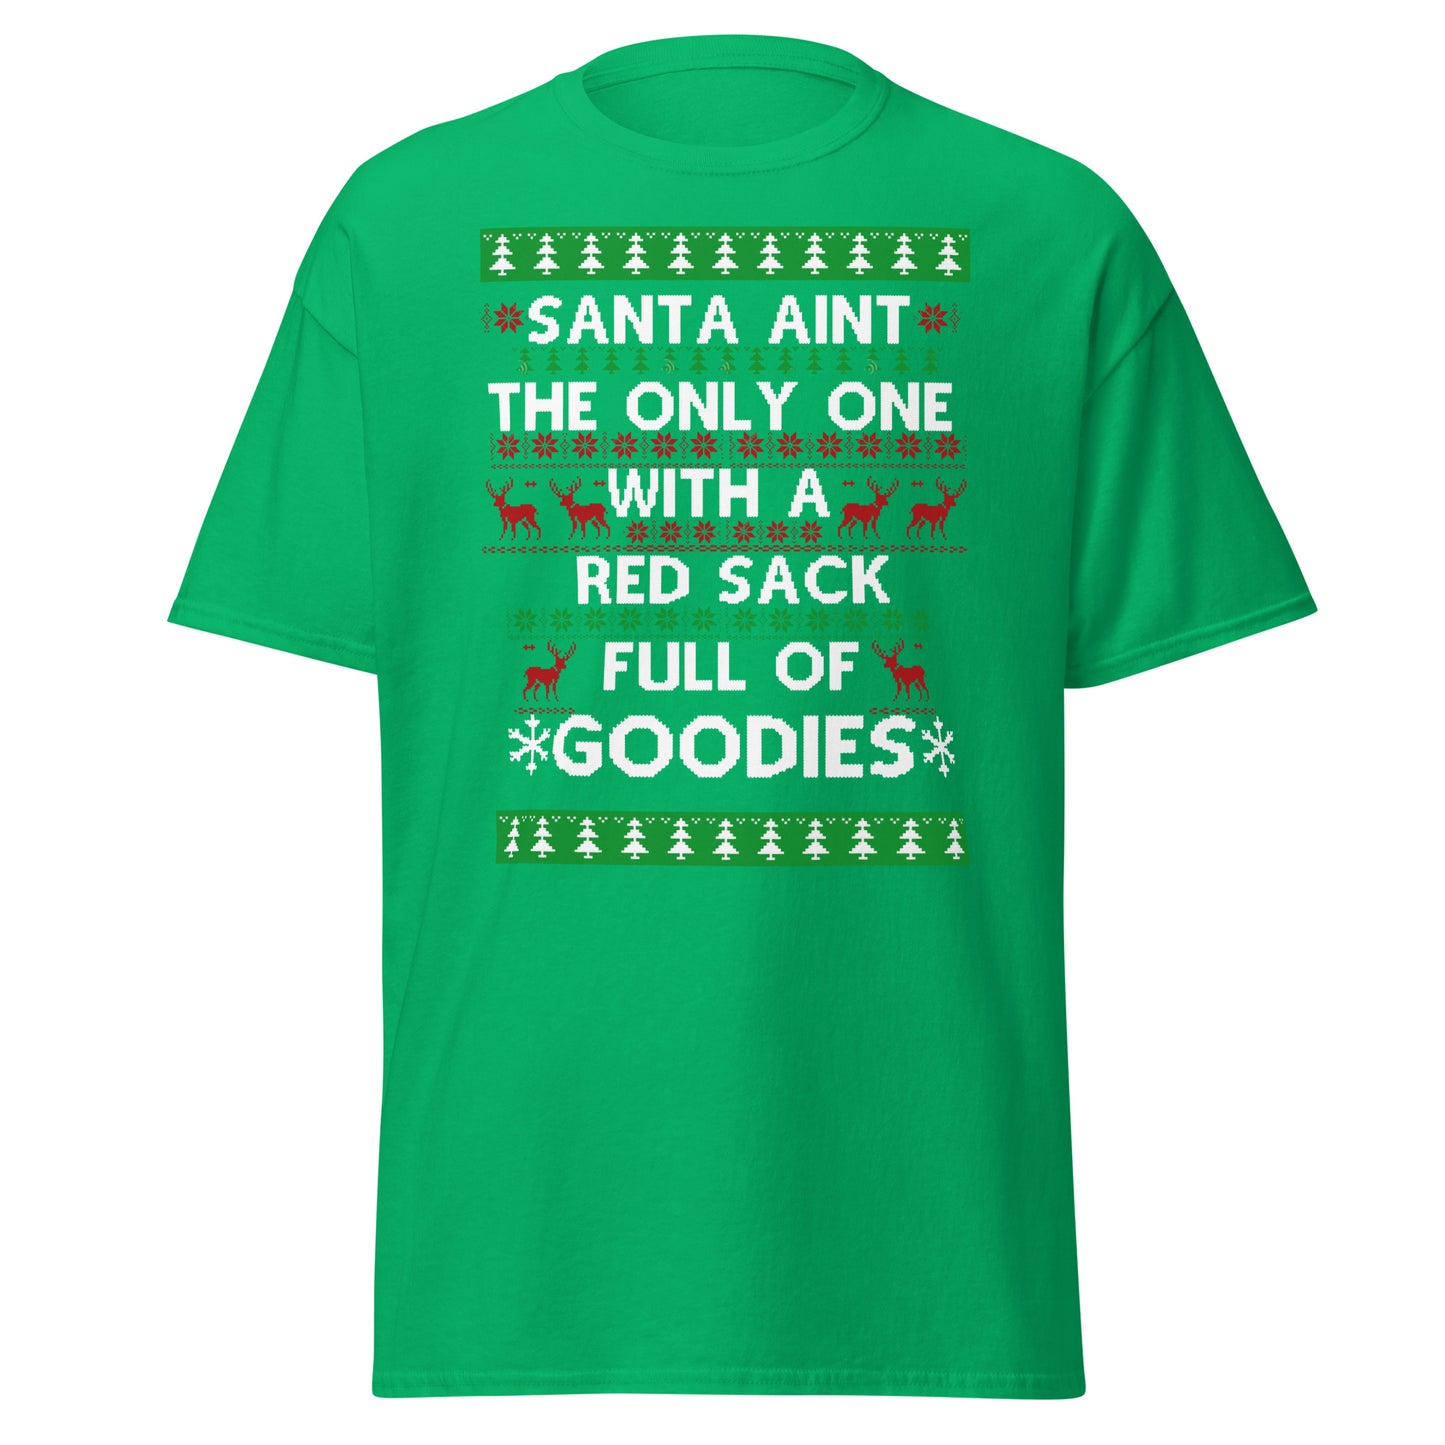 Santa's Sack Comedy T-Shirt - Holiday Laughter Guaranteed"